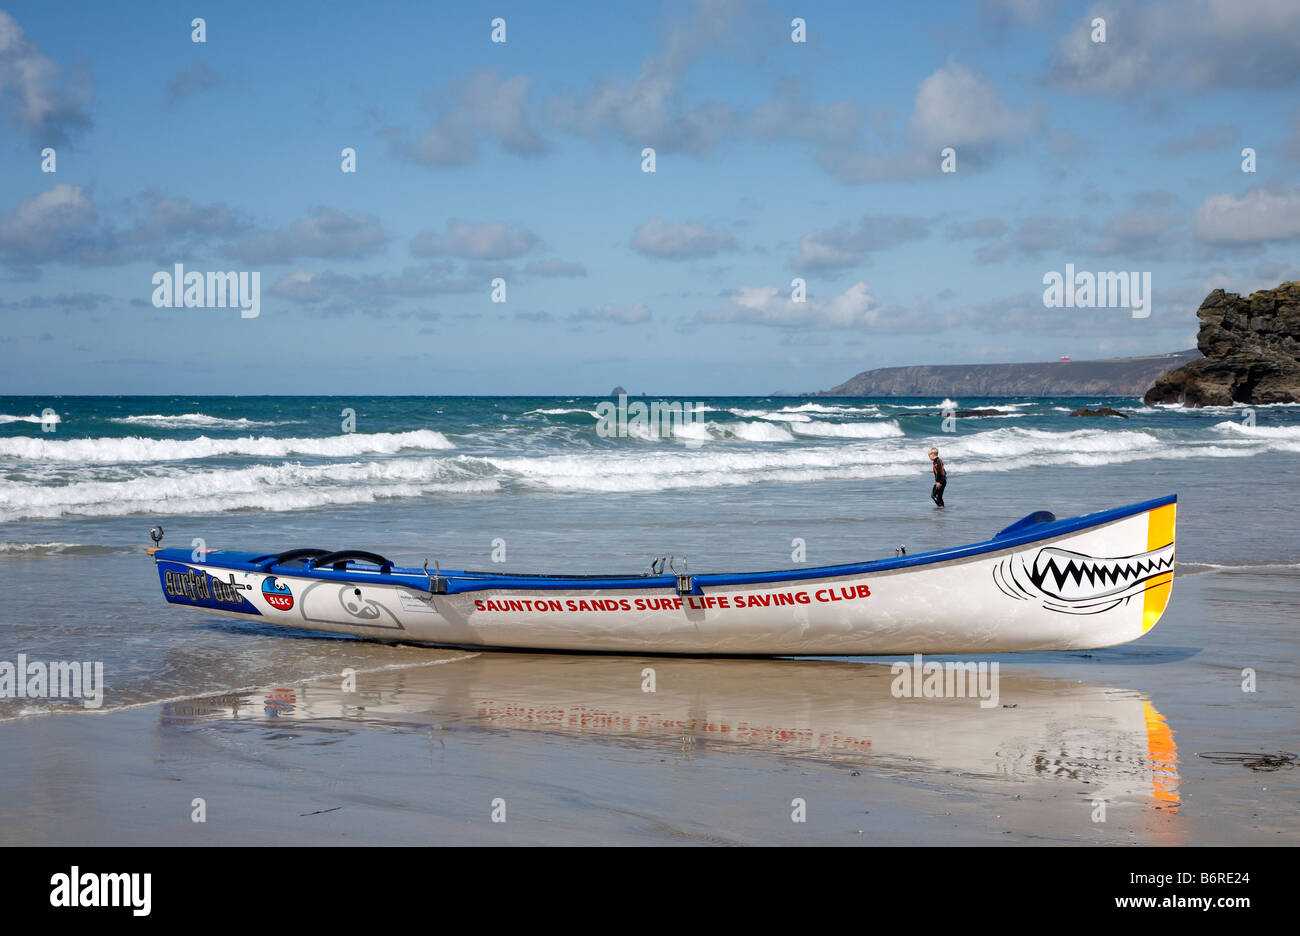 Saunton Sands Surfen lebensrettende Club Boot am Strand von Portreath, Cornwall UK. Stockfoto